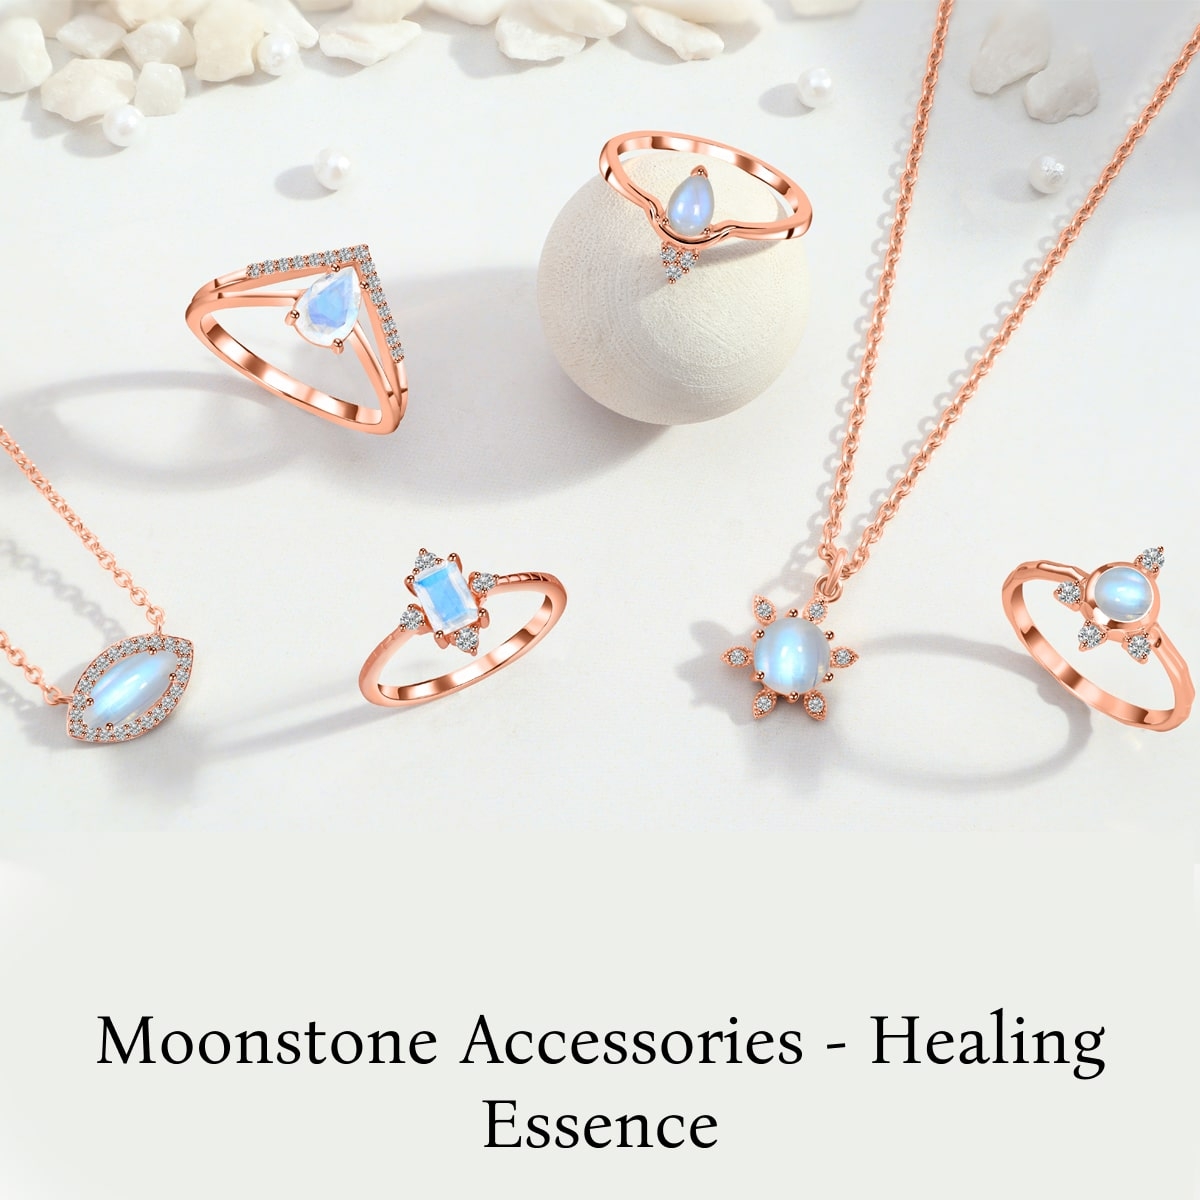 Healing Properties of Moonstone Jewelry